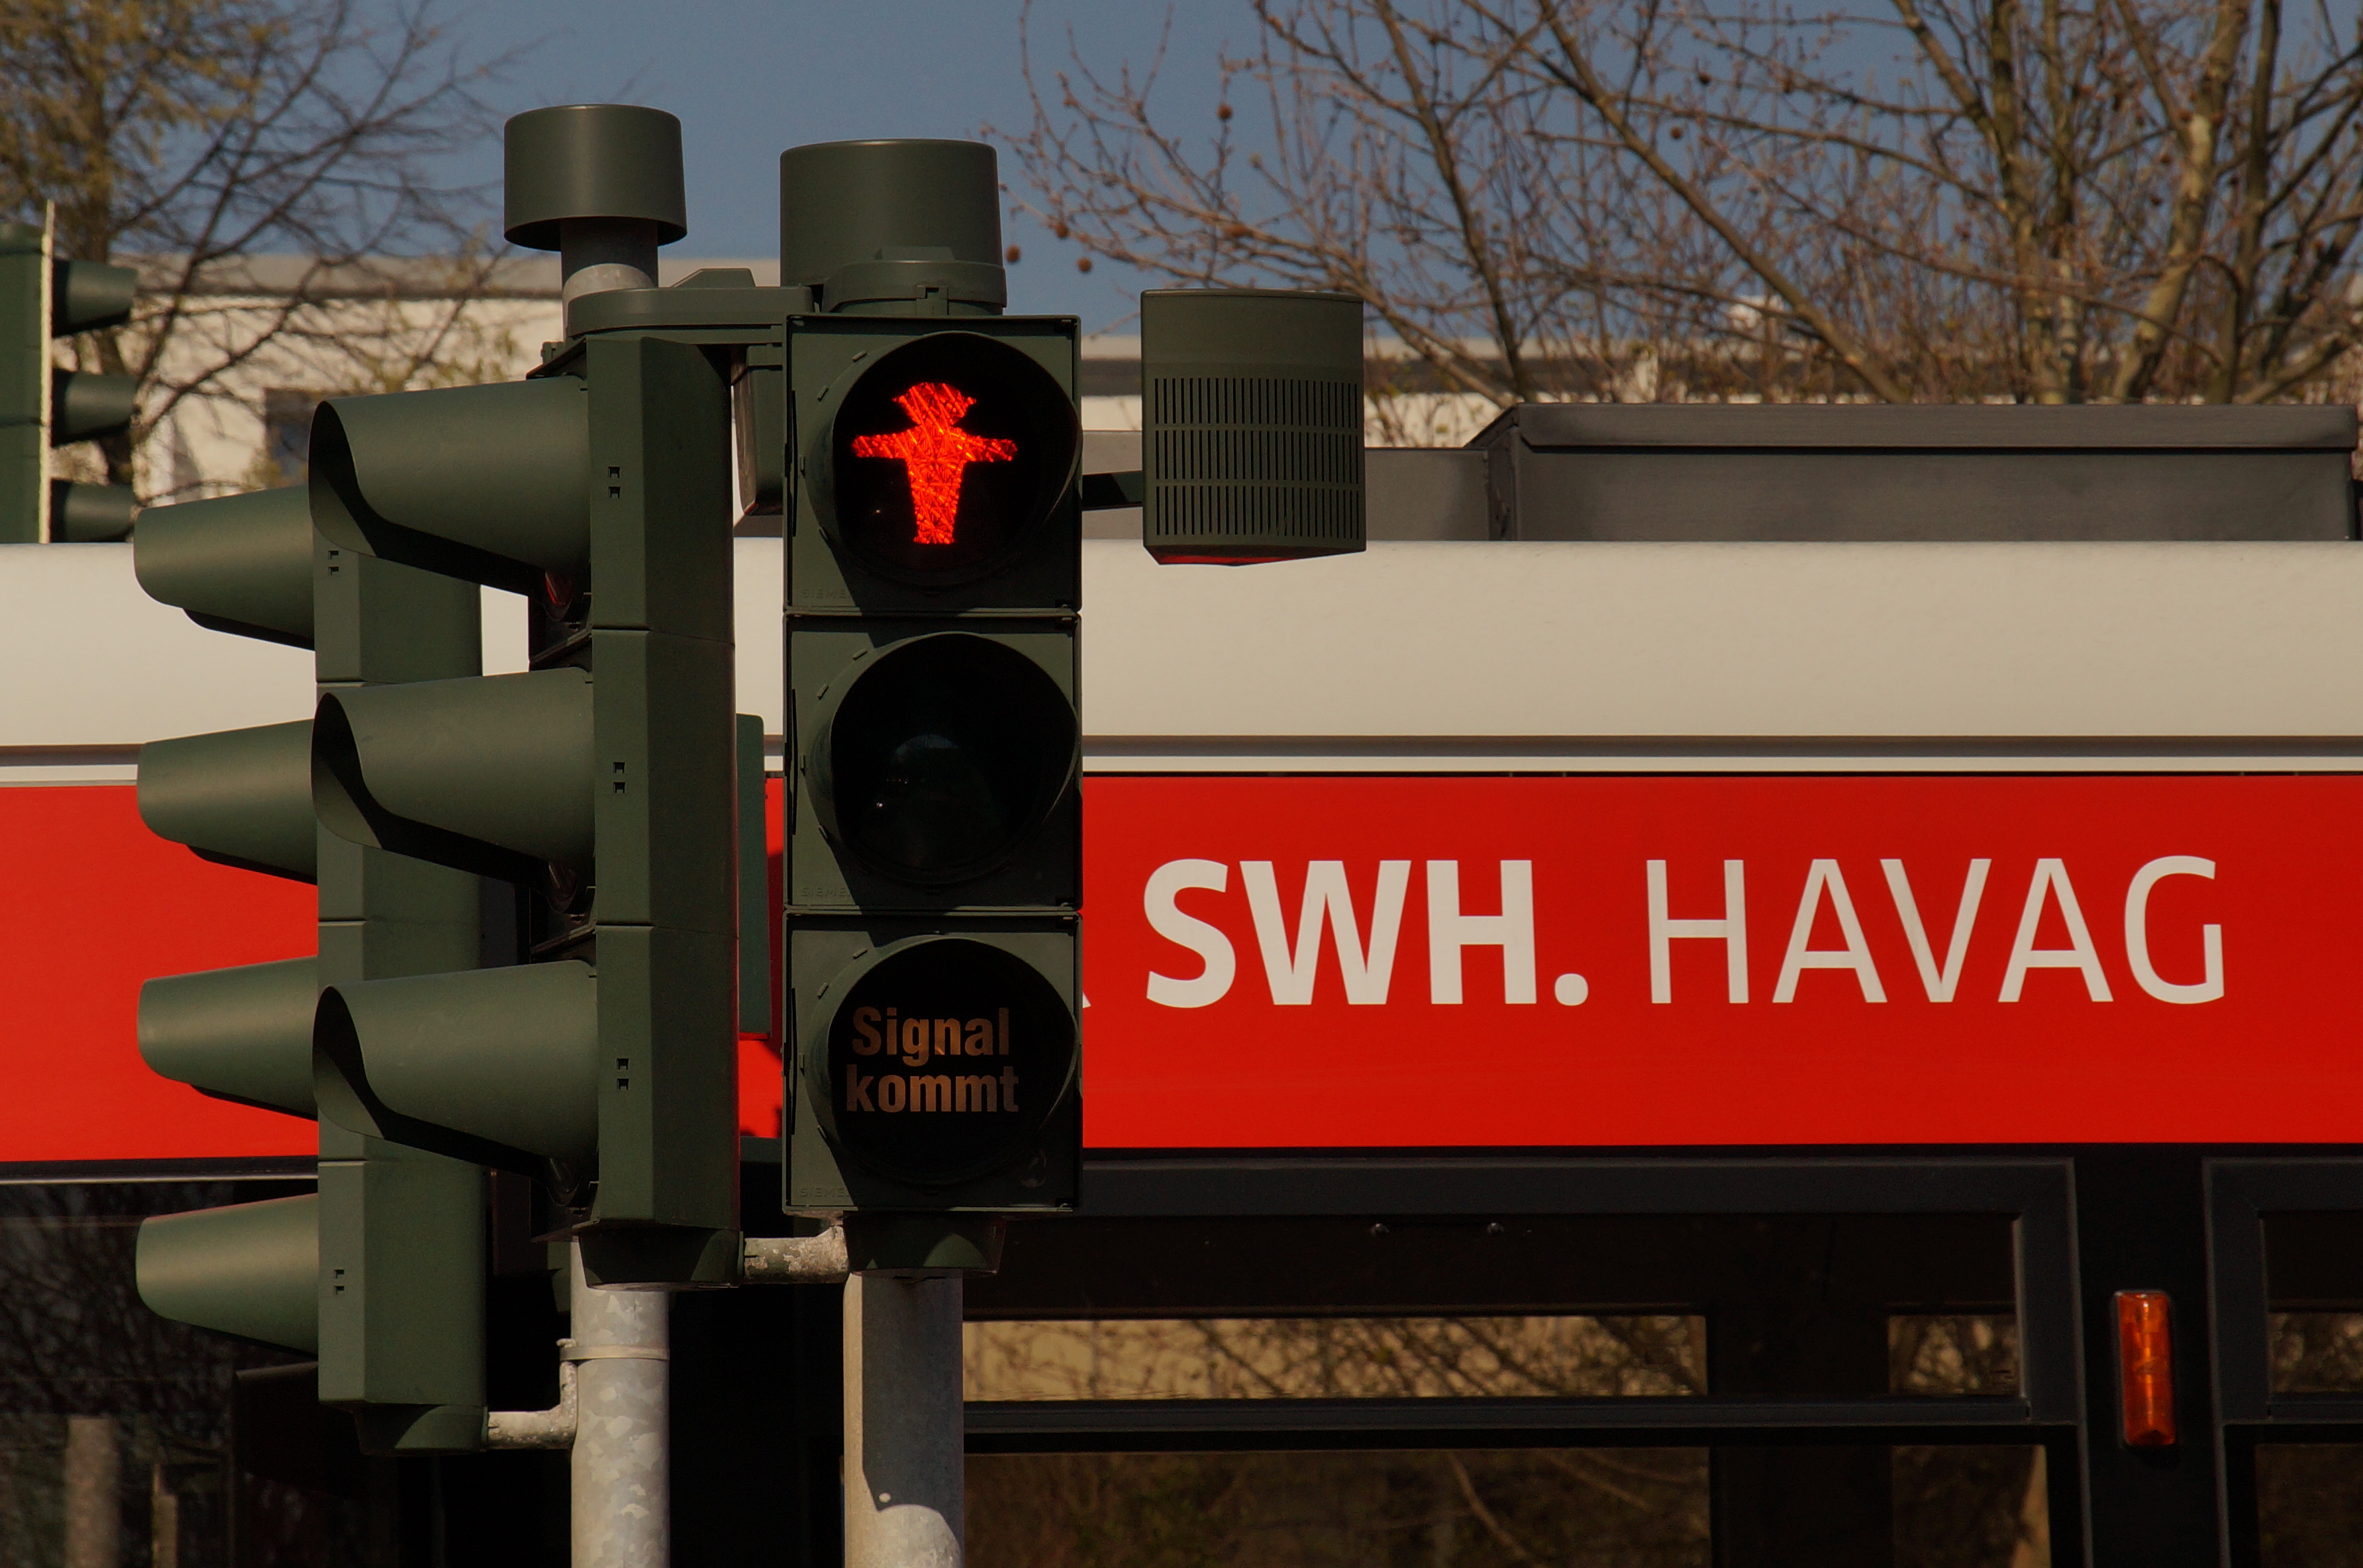 Die linke Bildhälfte zeigt eine Fußgängerampel, auf der das rote Männchen leuchtet und daneben einen Tonsignalgeber, ein kleiner grauer Kasten, der an der Ampel befestigt ist. Auf der rechten Bildhälfte befindet sich ein Bus mit der Aufschrift "SWH.HAVAG".